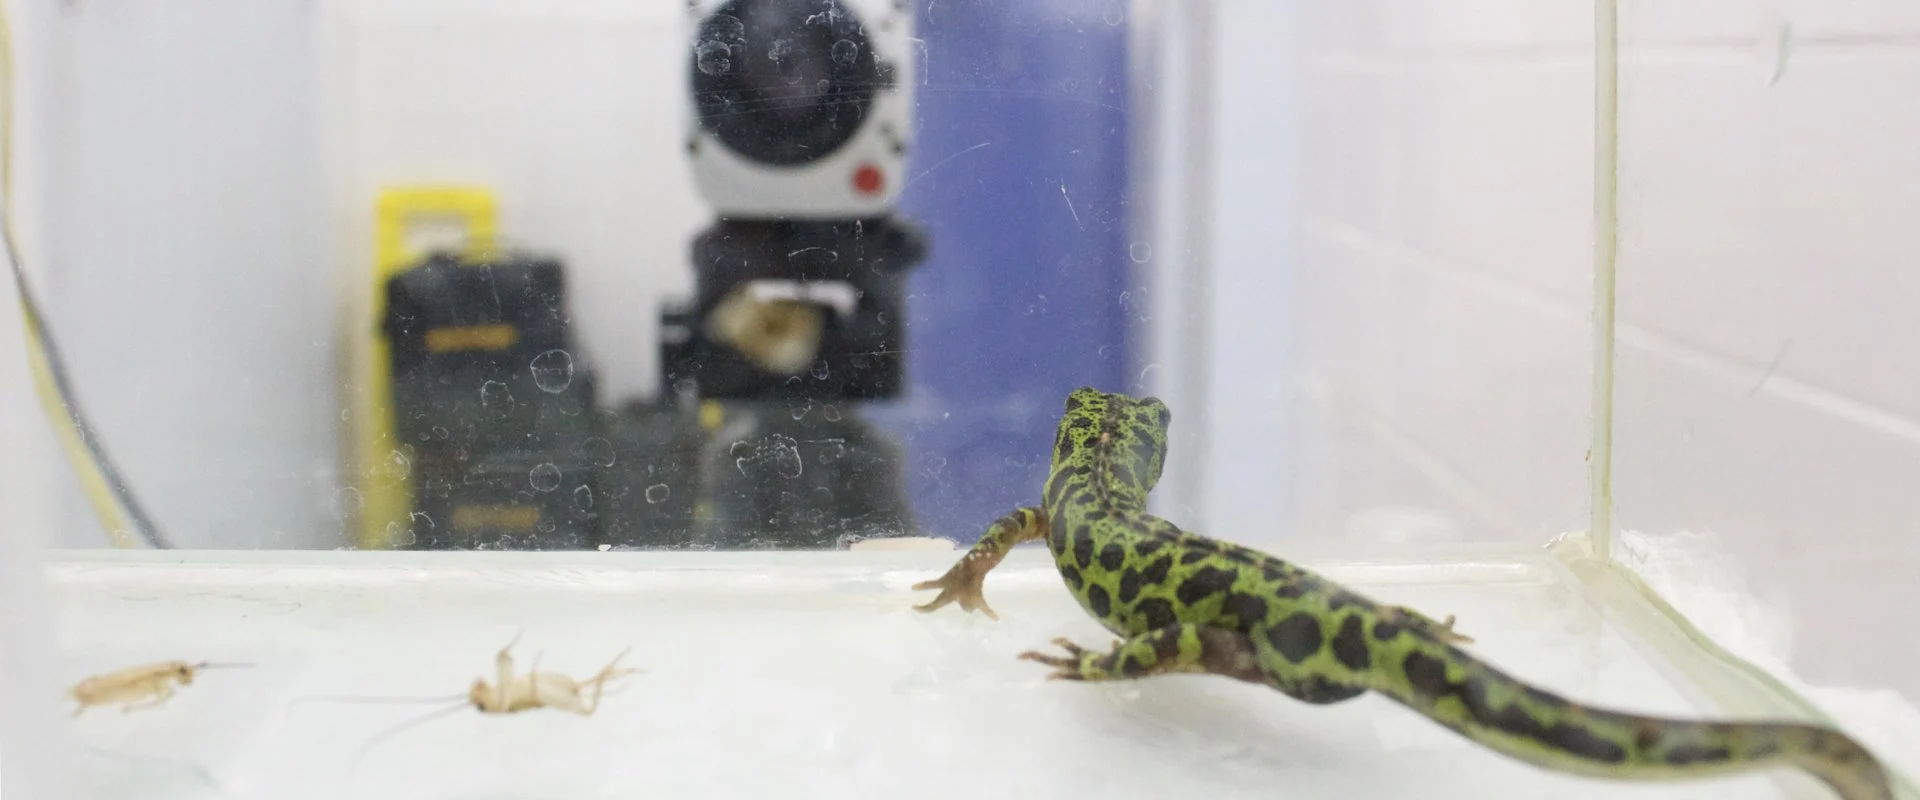 Ein Salamander, der auf dem Boden eines trockenen Acryltanks sitzt und nach vorne schaut, während im Hintergrund eine unscharfe Videokamera zu sehen ist